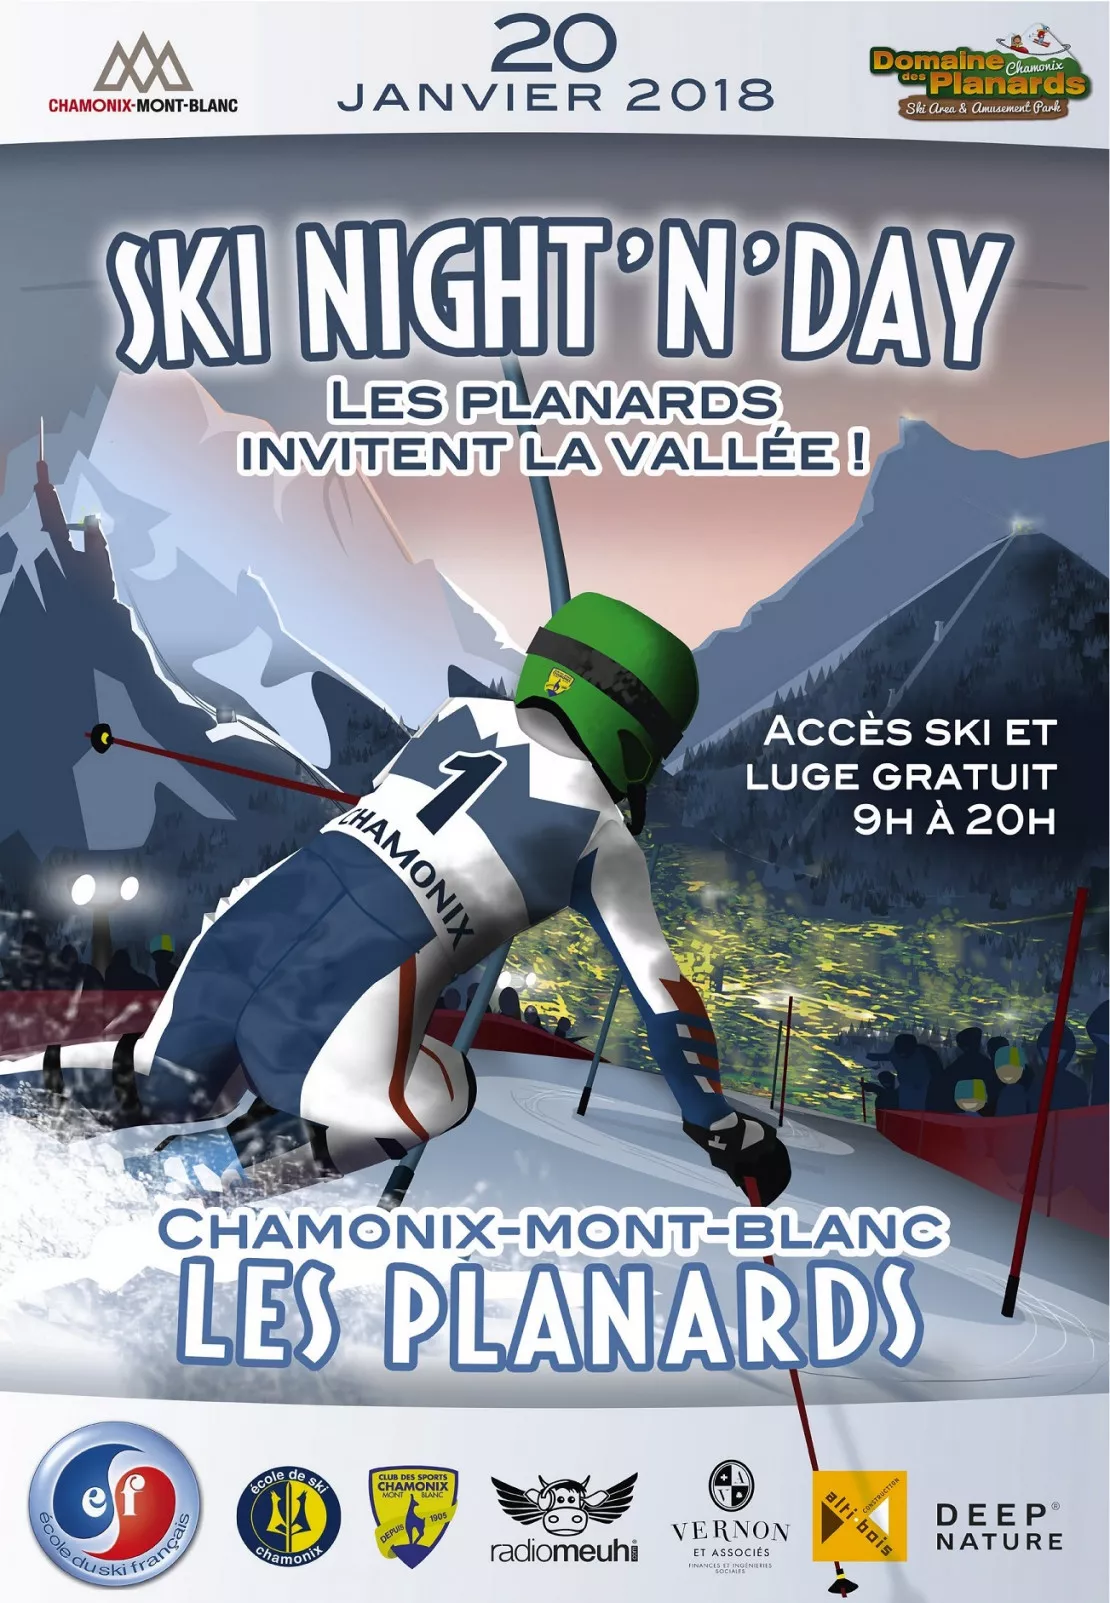 Samedi 20 janvier 2017 : invitation pour tous ski et luge gratuit de 9h à 20h aux Planards (Chamonix)